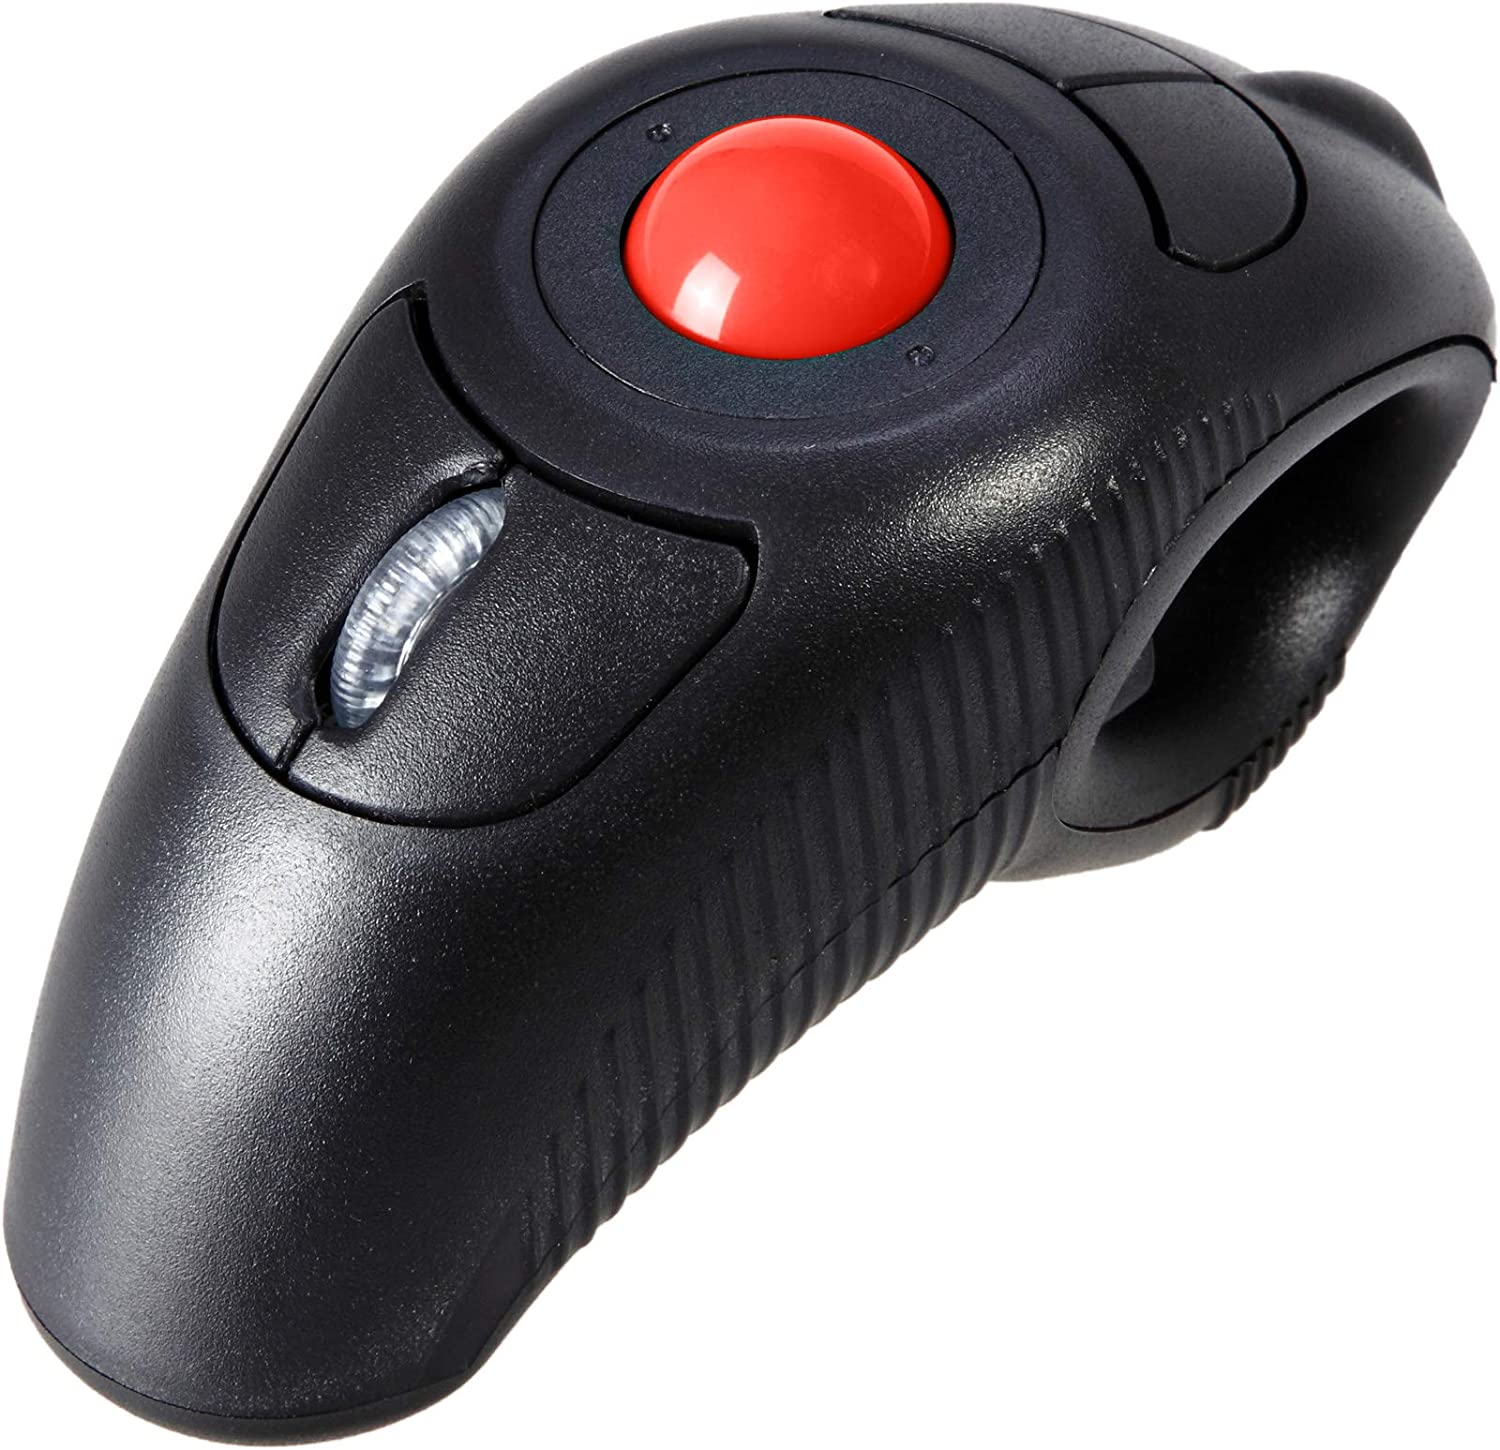 EIGIS 2.4G 인체공학 트랙볼 핑거 핸드헬드 PC 노트북 Mac 좌우 사용자용 USB 무선 마우스 검은색 빨간색